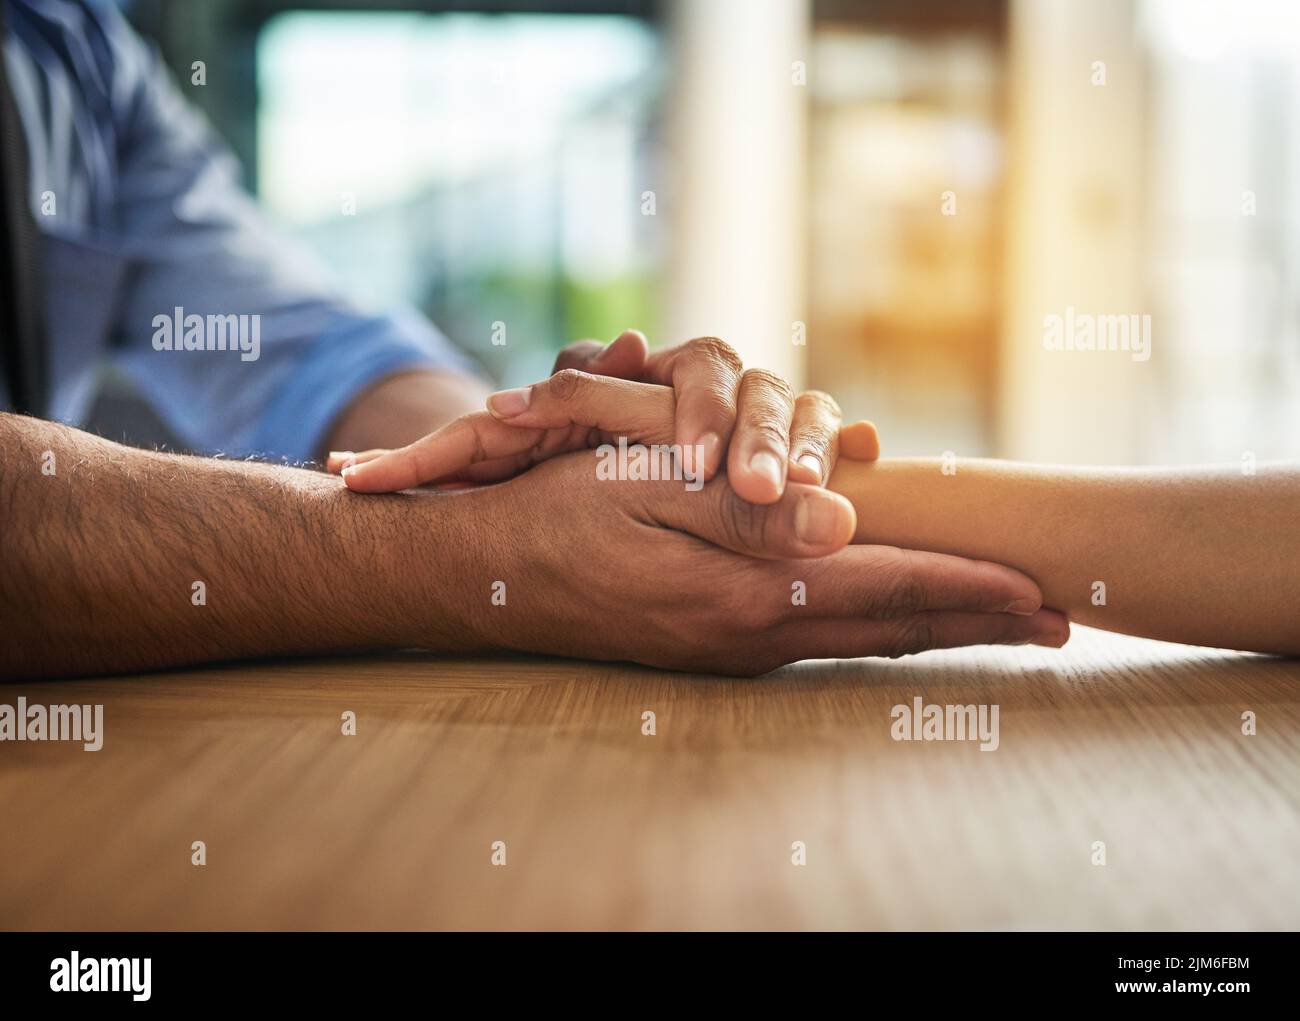 Mains tenant ensemble avec amour, soutien et soin dans un moment de contact et de collage. Gros plan d'une main étroite et aimante entre deux personnes ensemble Banque D'Images